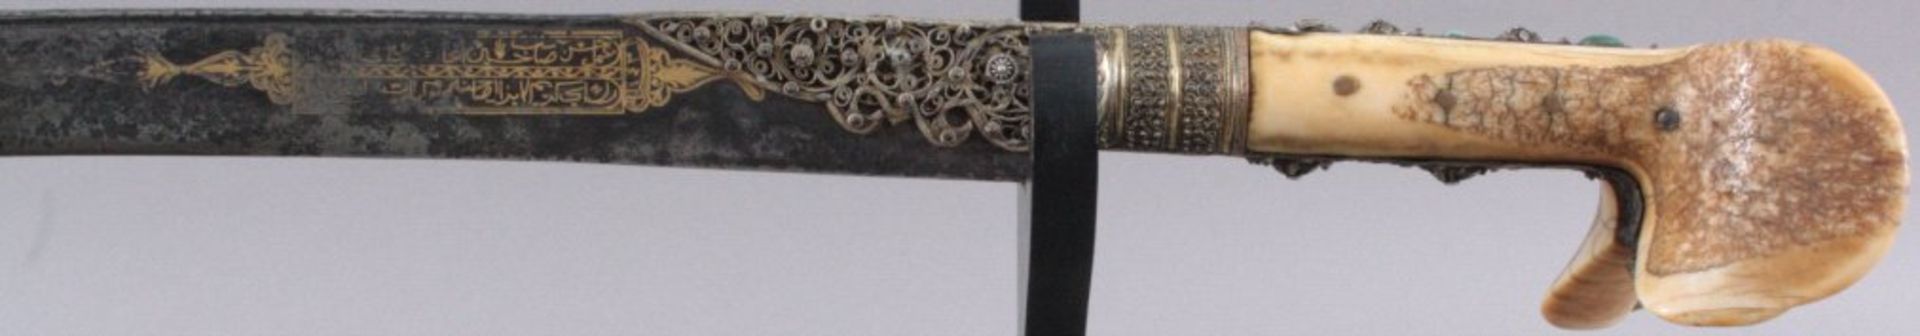 Schwert, Türkei Yatagan 18./19. Jh.Damastklinge mit Goldtaschierung und Meistername"Hasan" ,Besitzer - Bild 2 aus 5